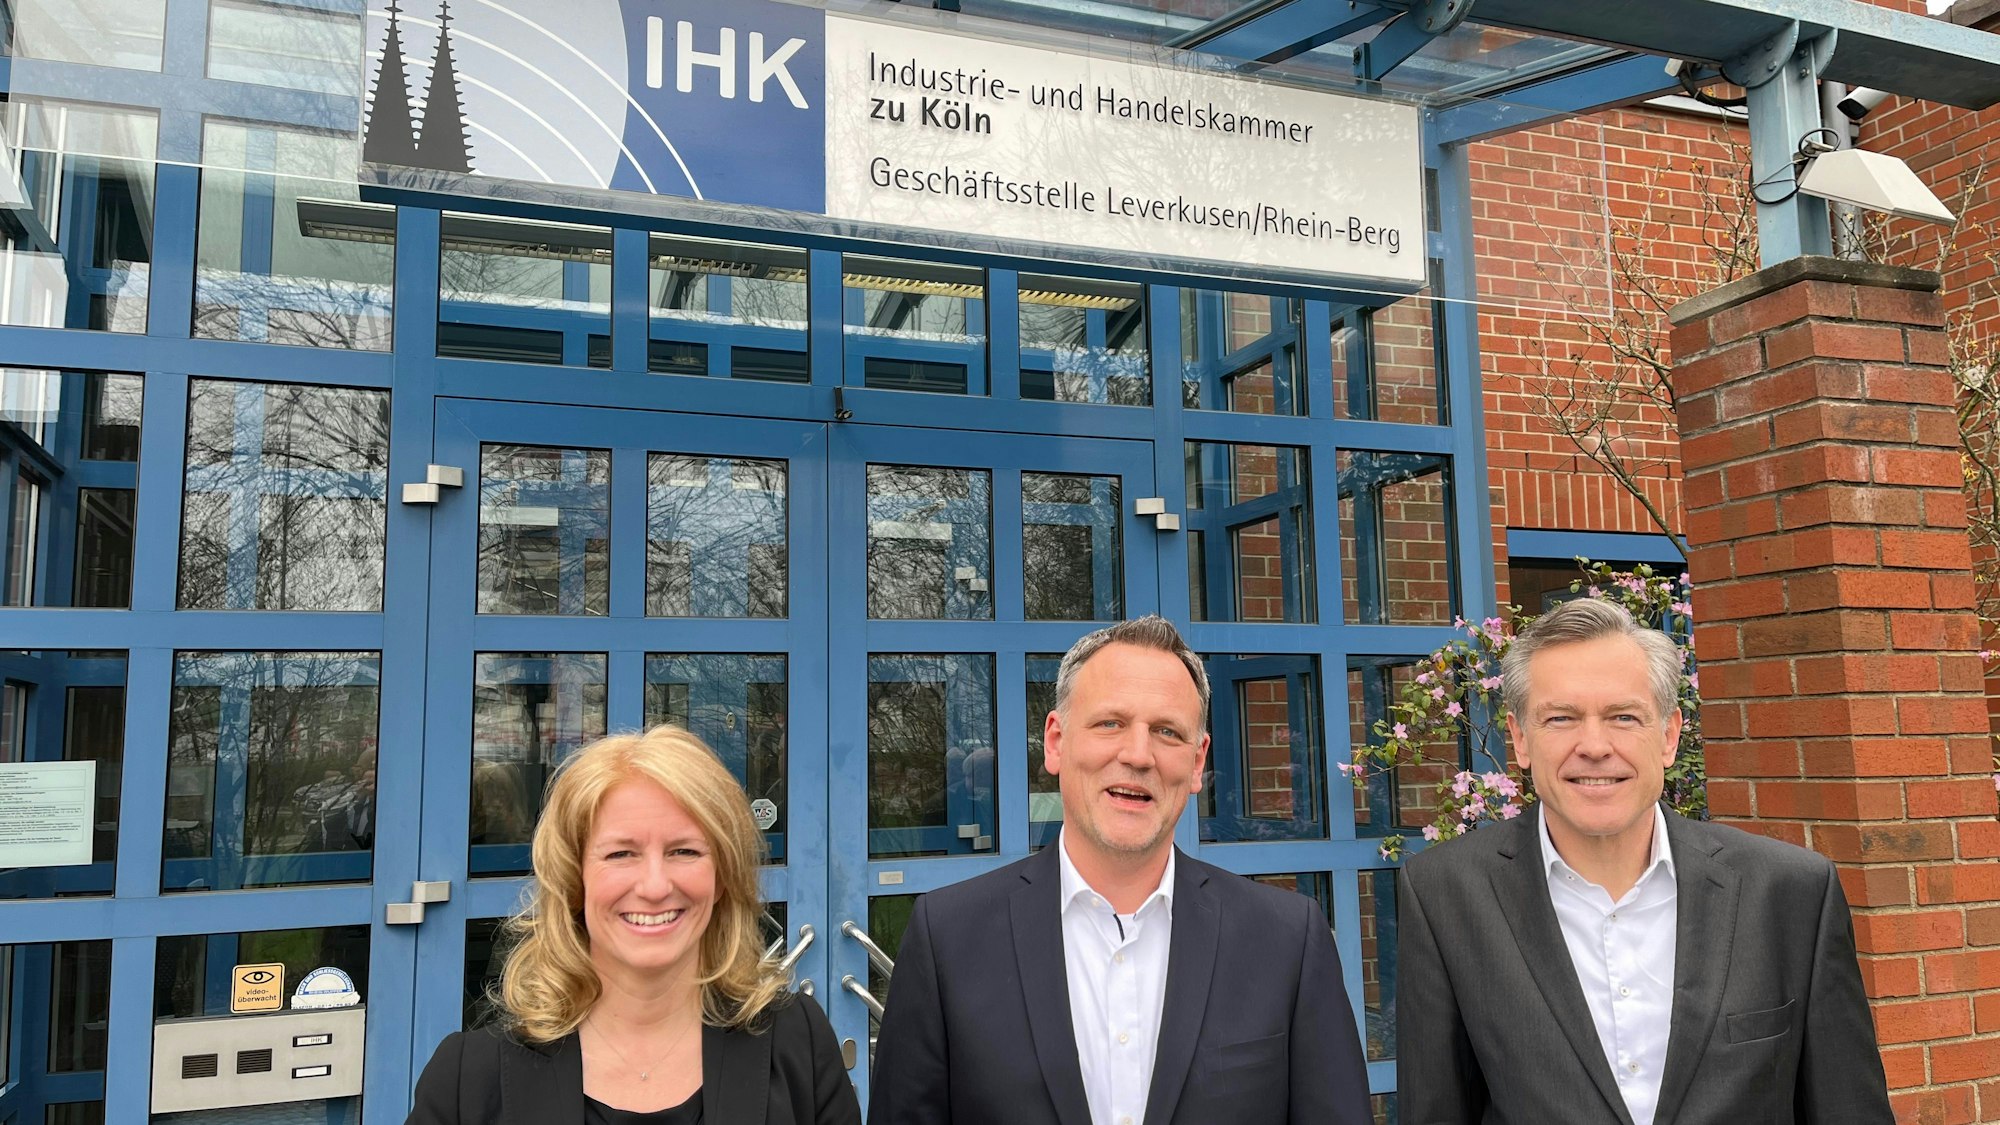 IHK-Präsidentin Nicole Grünewald und Hauptgeschäftsführer Uwe Vetterlein umrahmen Jörg Hausmann, den neuen Leiter der Zweigstelle in Opladen, vor der sie stehen.